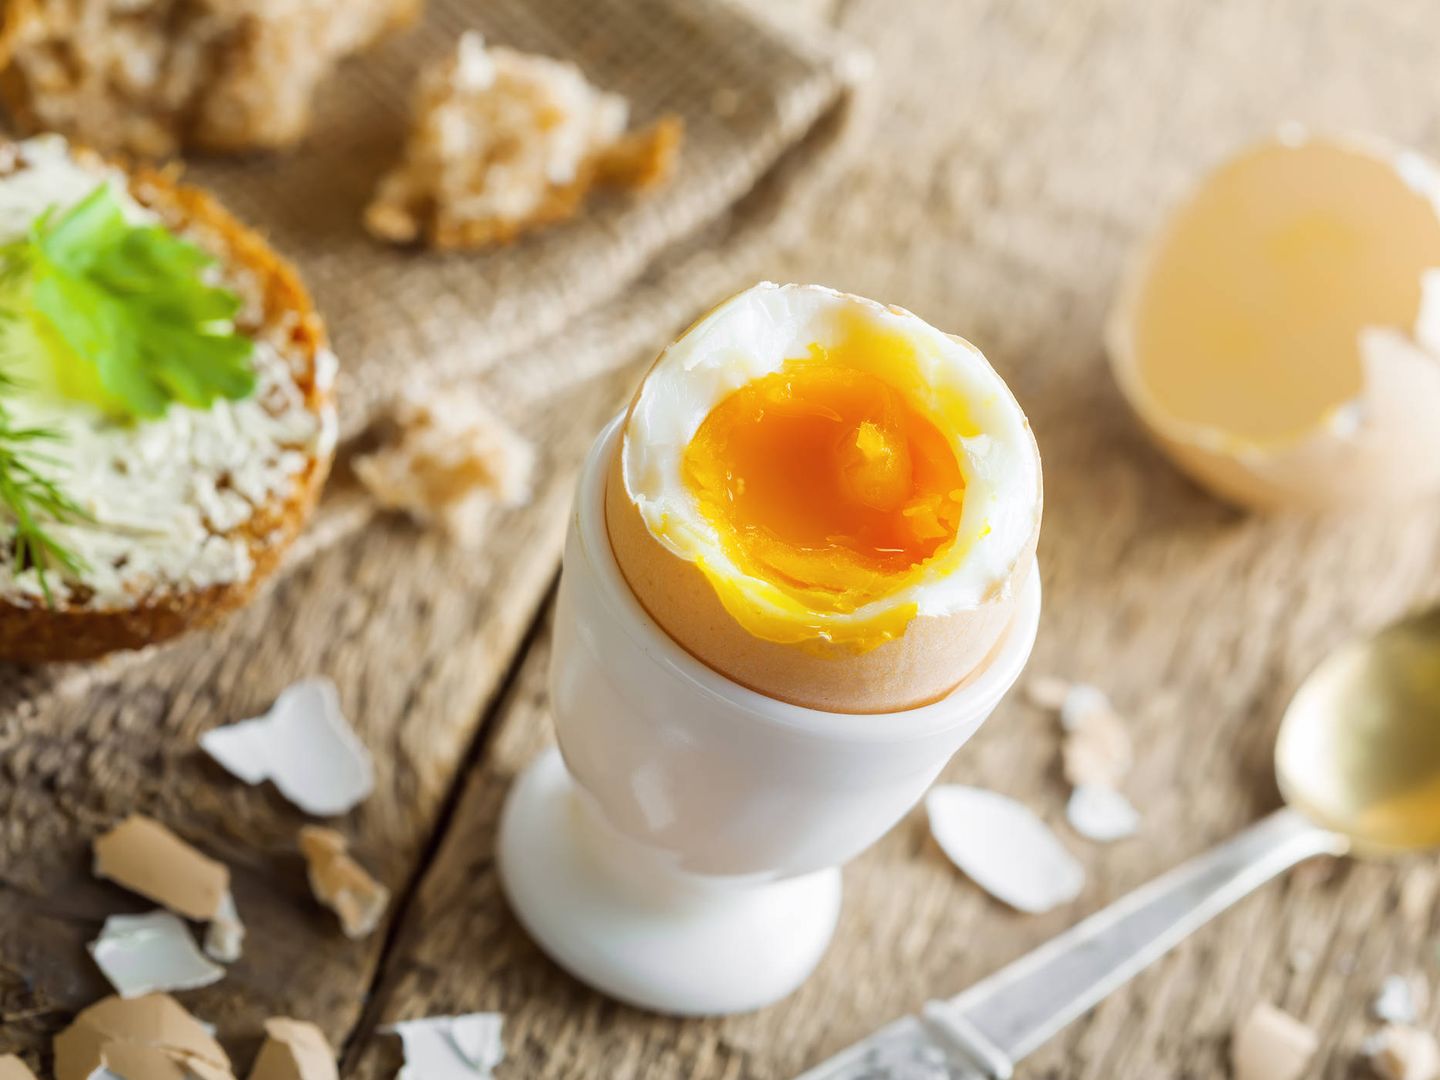 Muchas personas han añadido huevos cocidos a su desayuno habitual